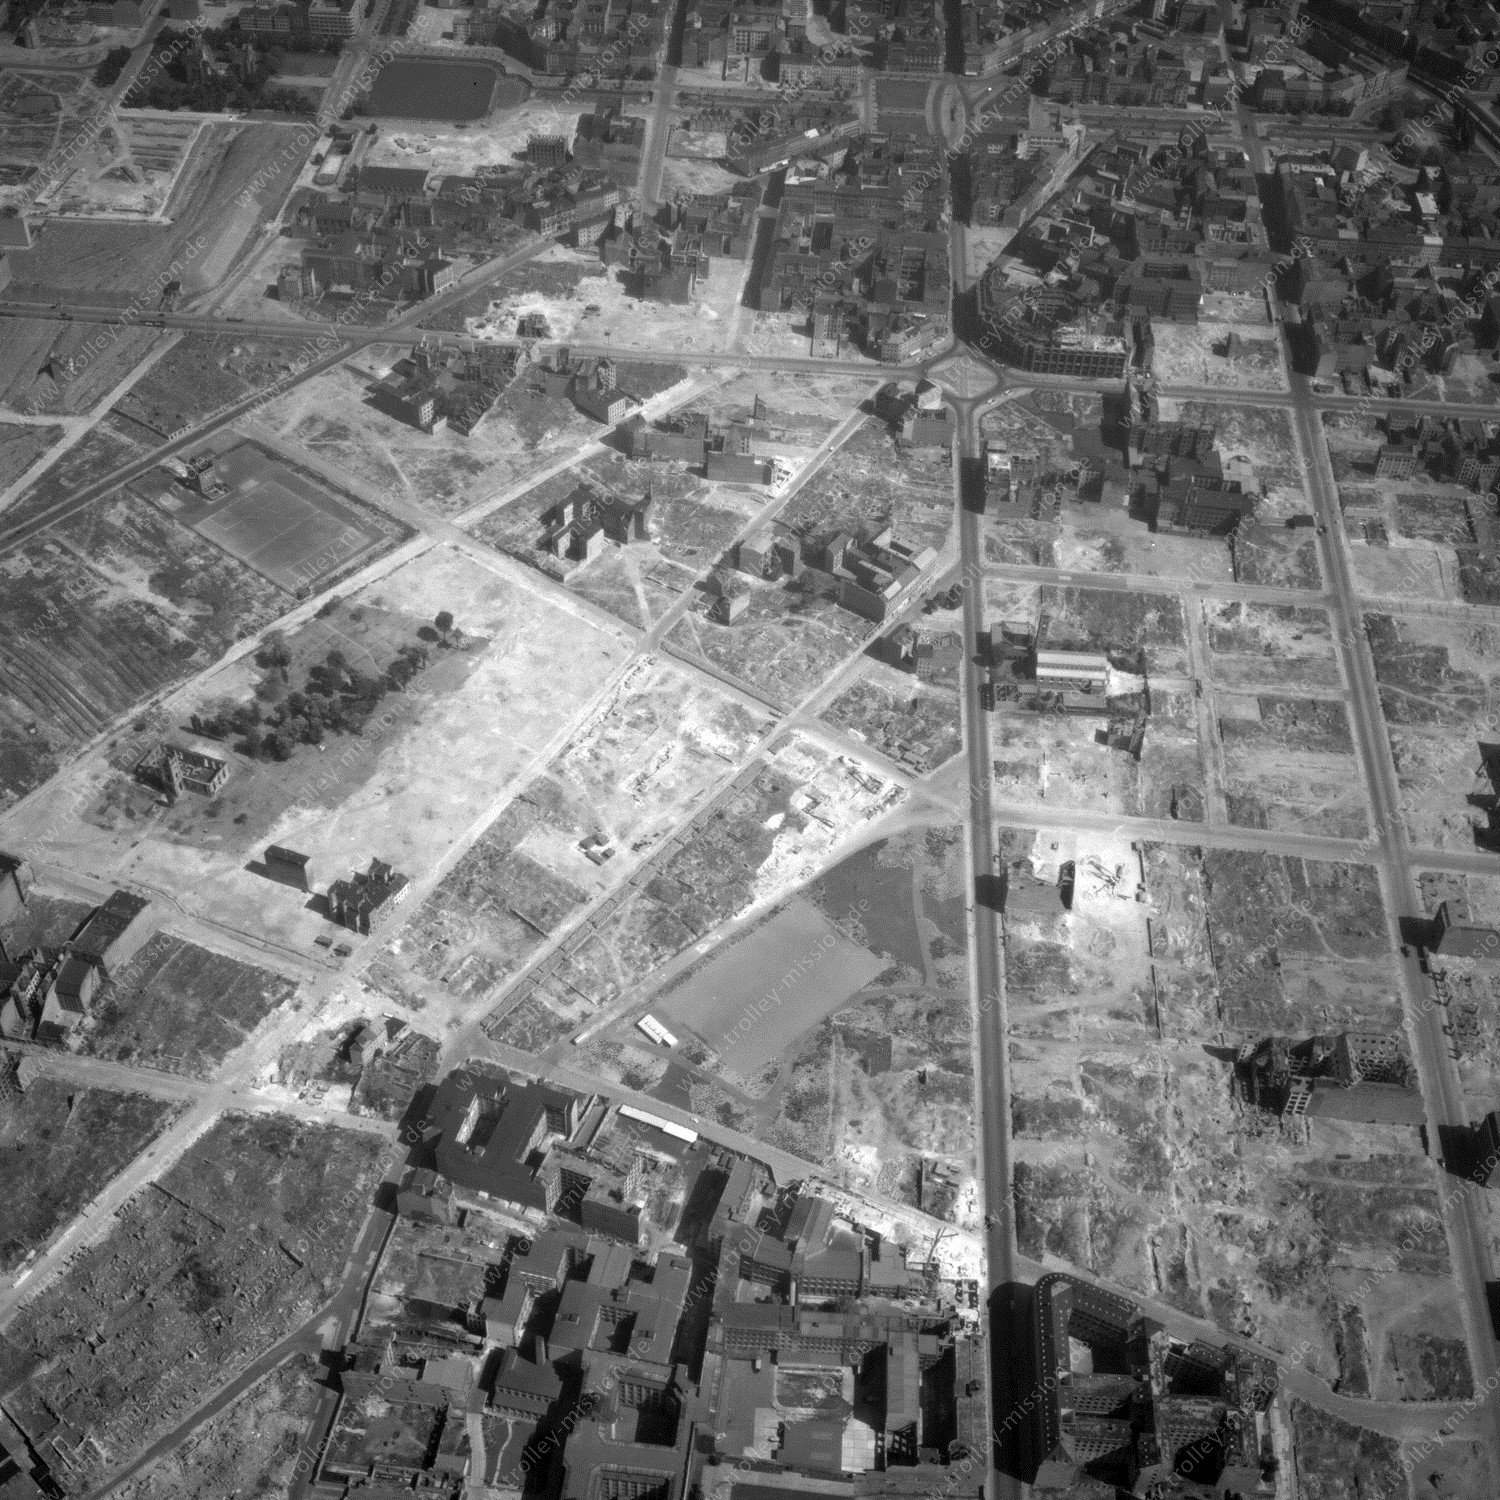 Alte Fotos und Luftbilder von Berlin - Luftbildaufnahme Nr. 11 - Historische Luftaufnahmen von West-Berlin aus dem Jahr 1954 - Flugstrecke Kilo